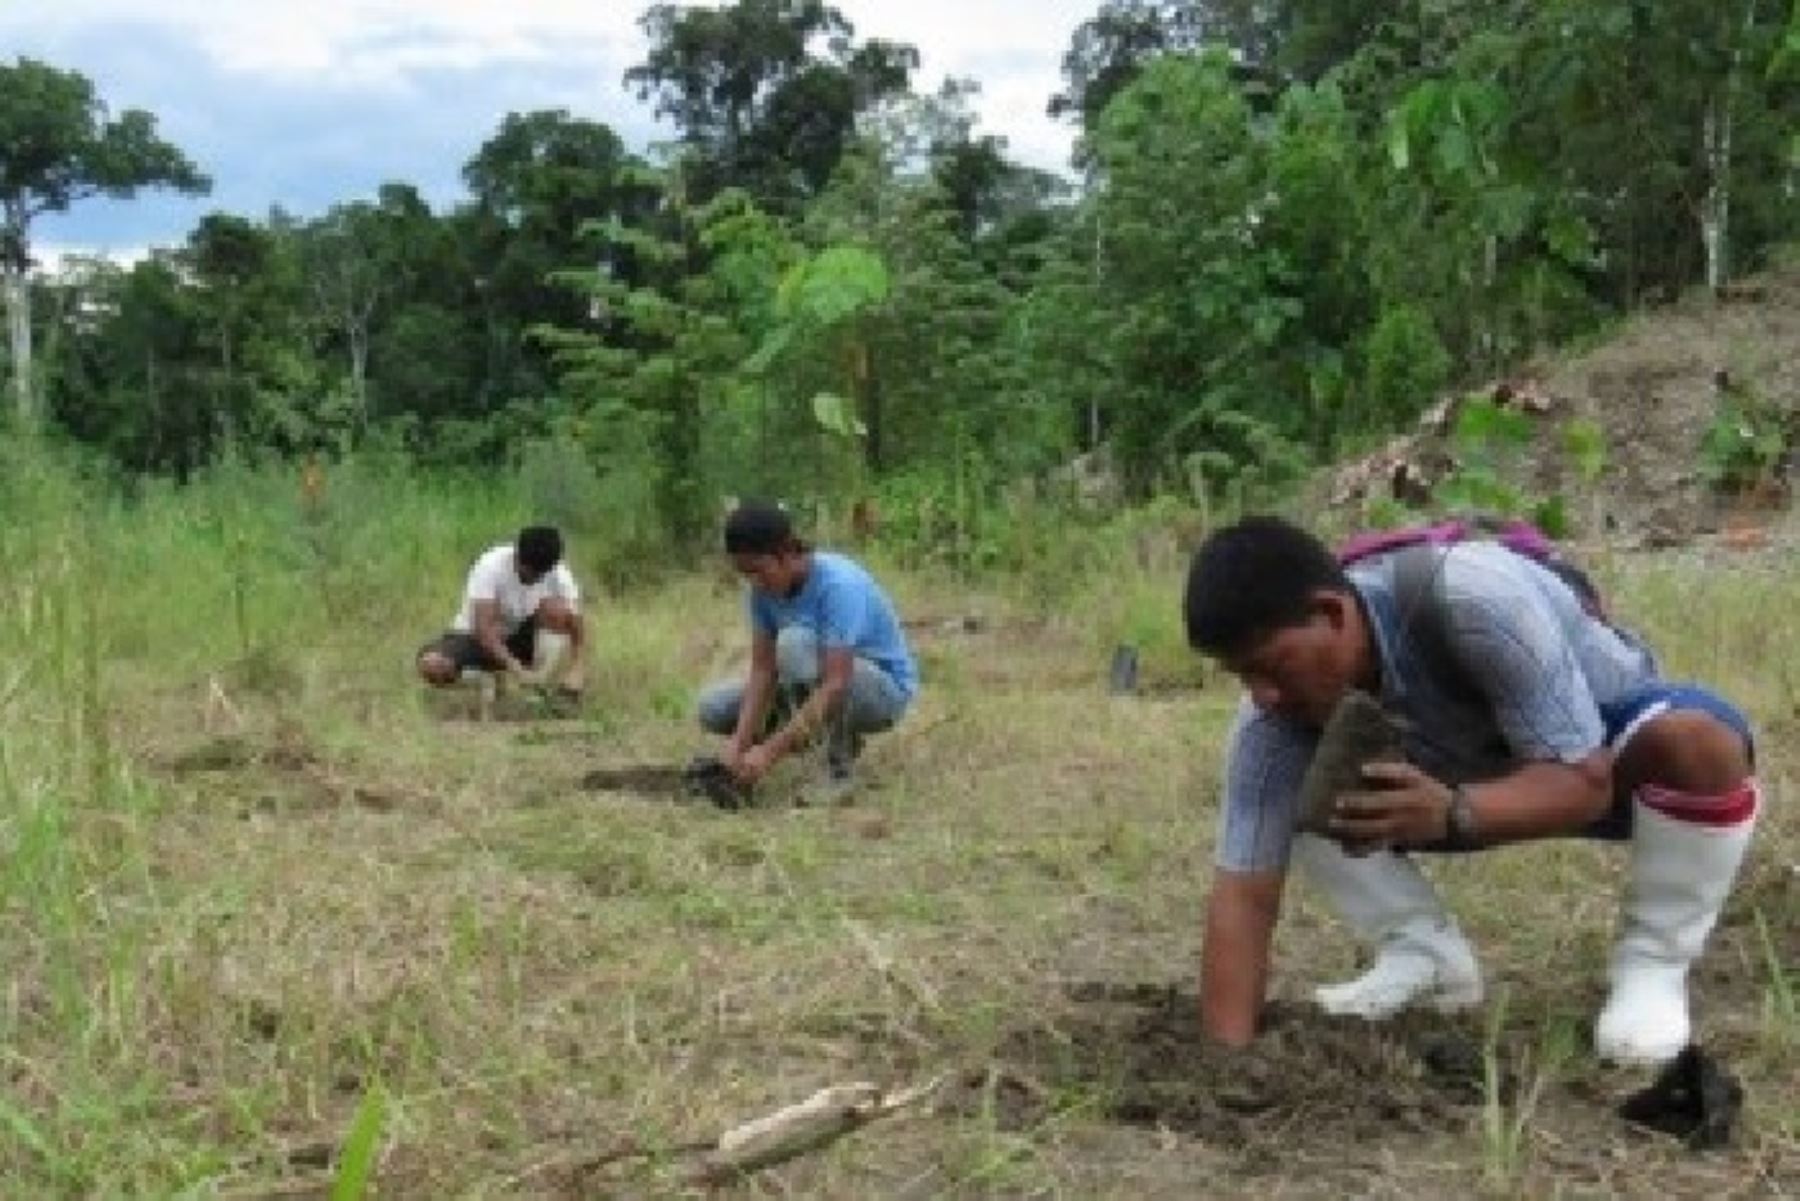 El esfuerzo conjunto de autoridades peruanas y la cooperación internacional, con el valioso apoyo de la tecnología, apunta a recuperar en 2018 un total de 140 hectáreas de bosque degradado, principalmente por la minería ilegal, a través de la reforestación con más de 155,000 árboles en el distrito de Inambari y la provincia de Manu, en la región Madre de Dios.